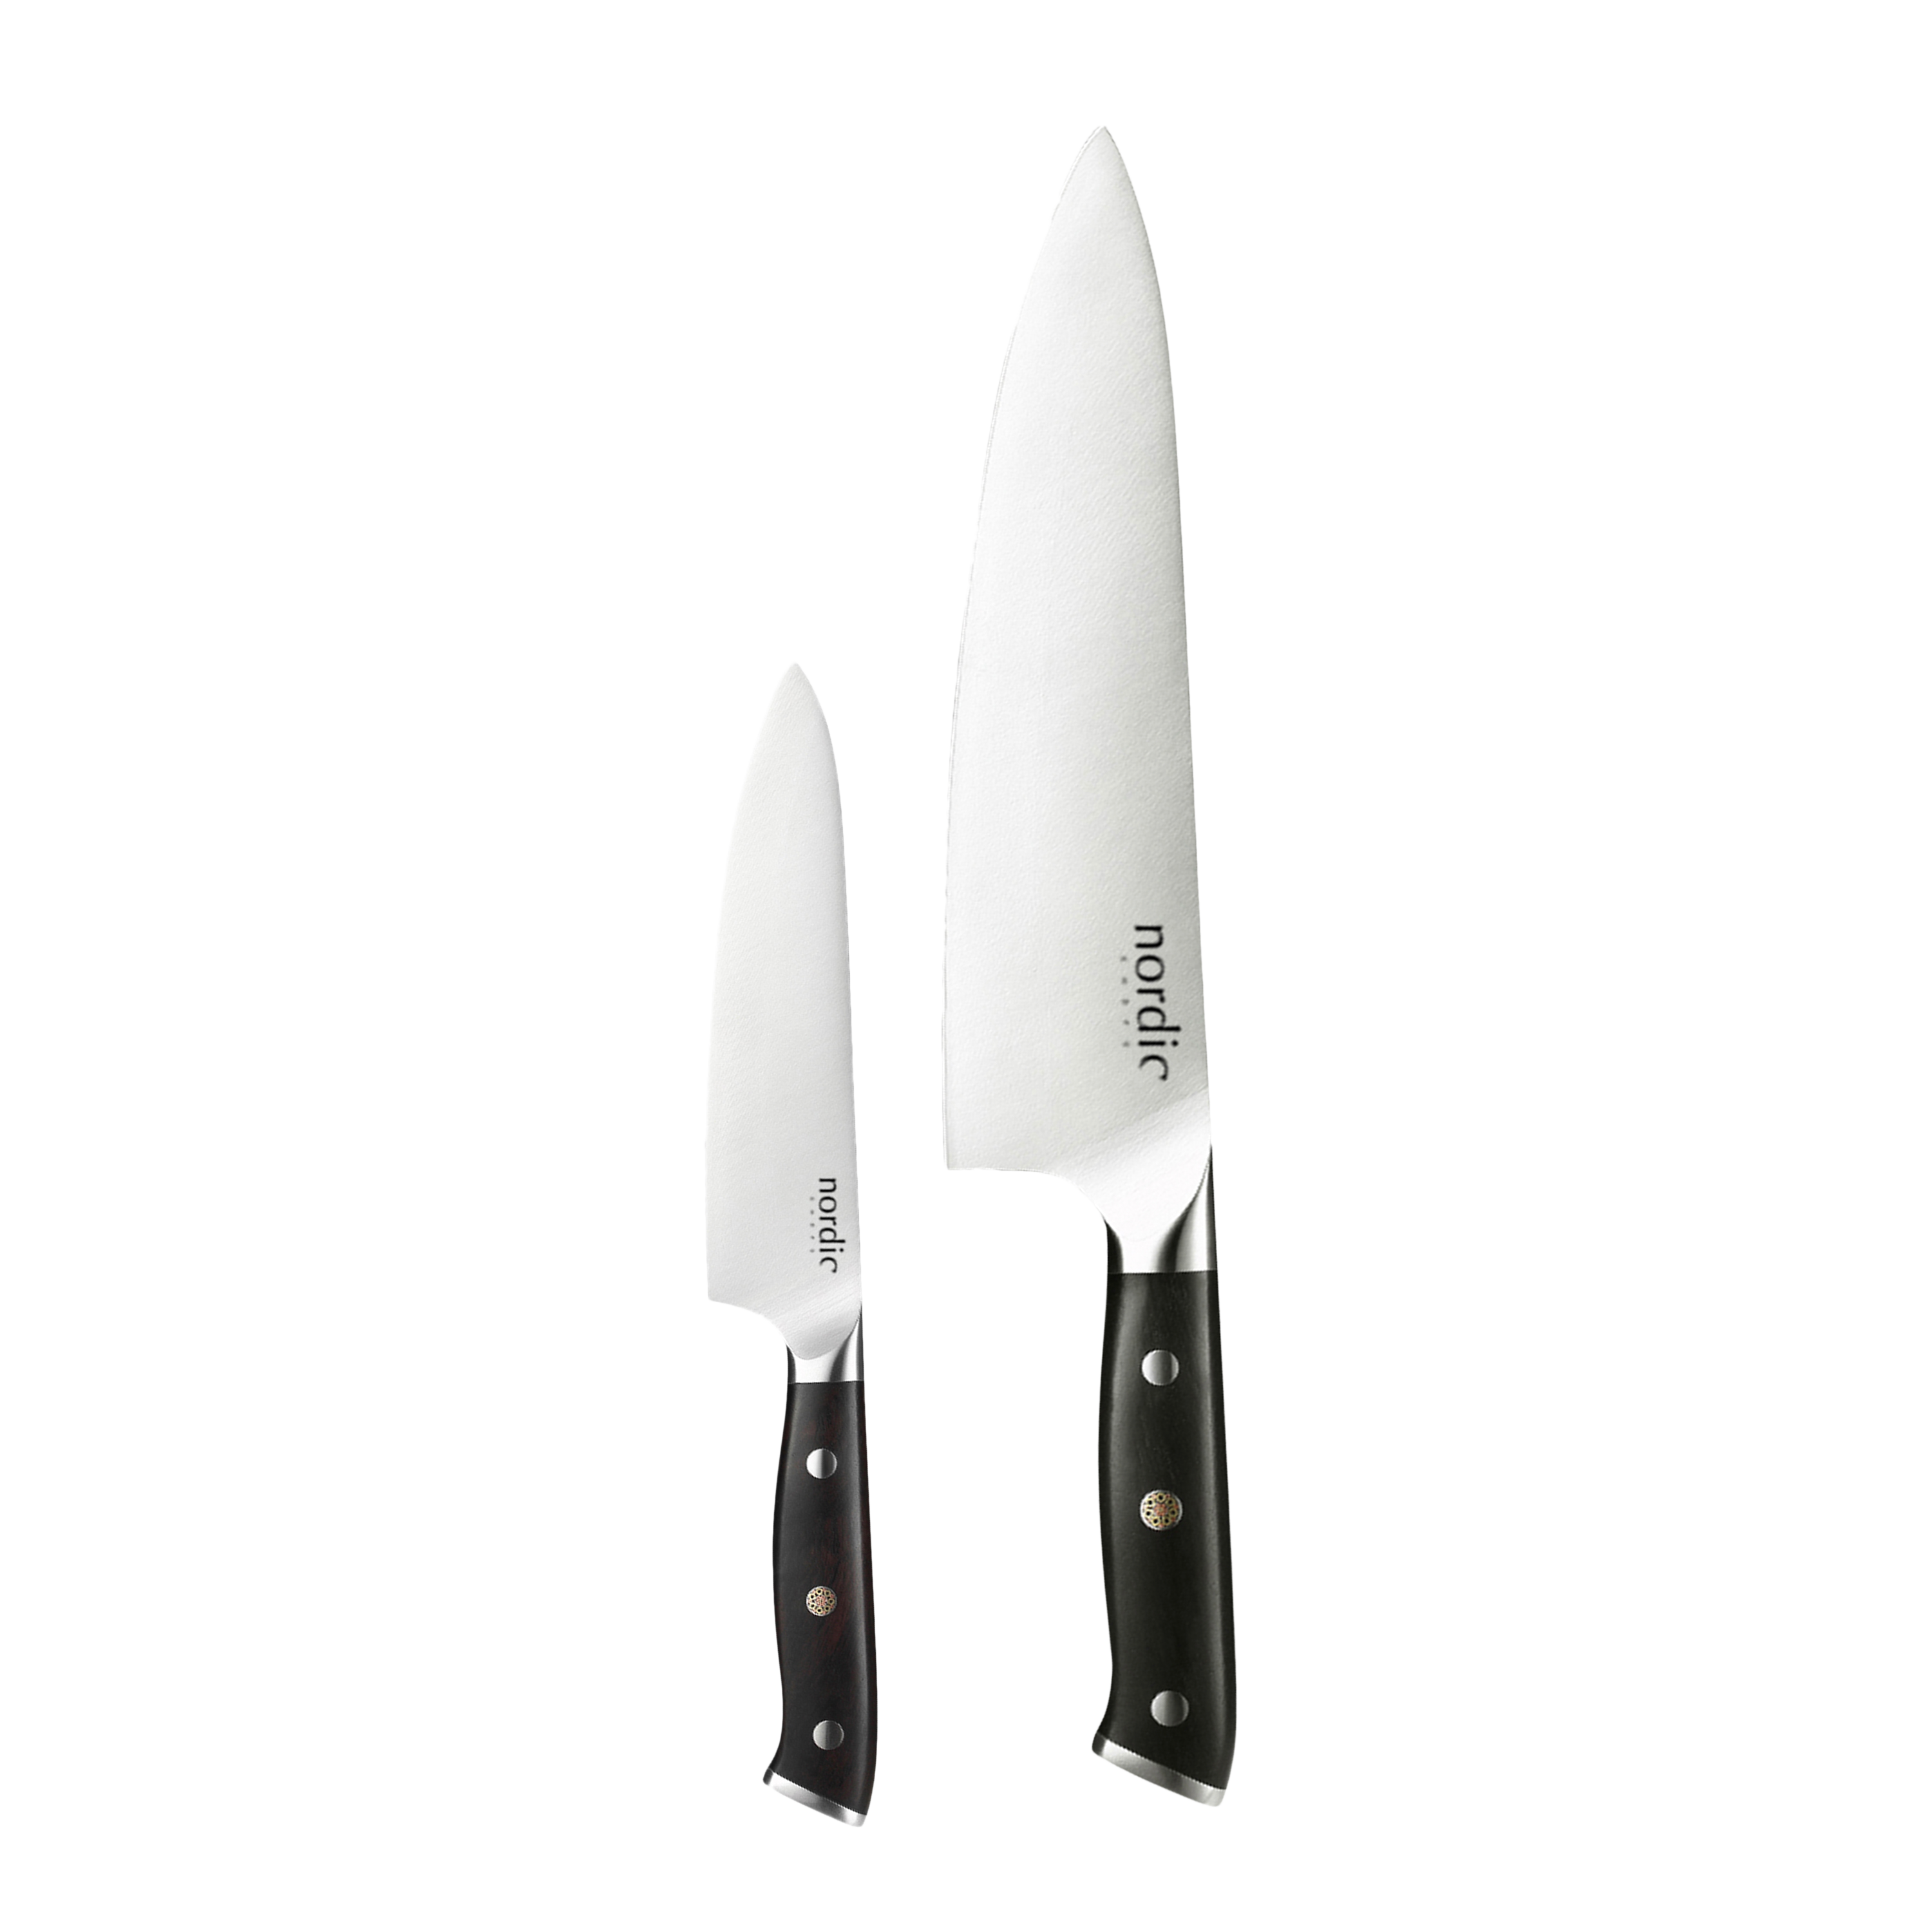 Nordic Chefs - Kokkekniv og Universalkniv